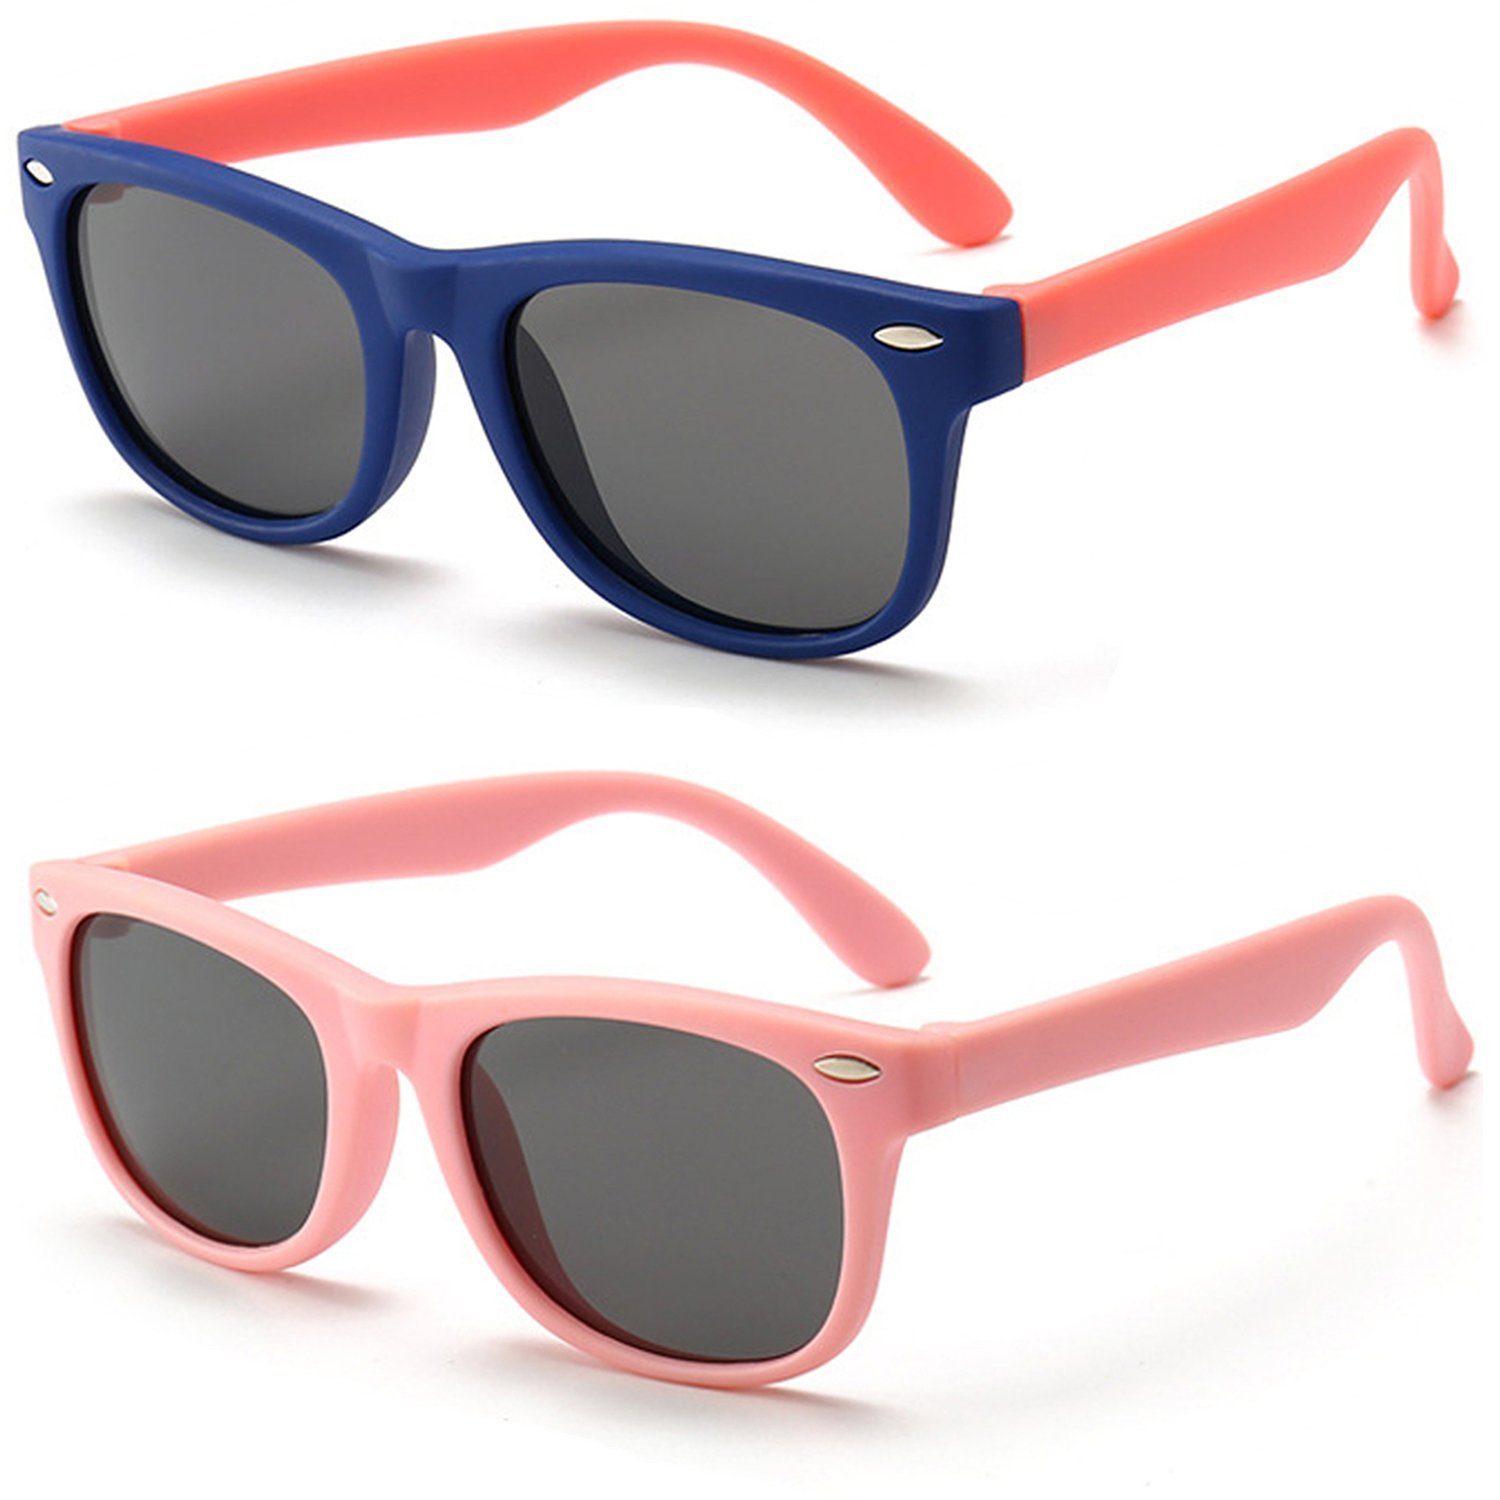 Olotos Sonnenbrille Sonnenbrille für Kinder Mädchen Jungen Gummi 100% UV400 Schutz Brille Dunkelblau+Rosa